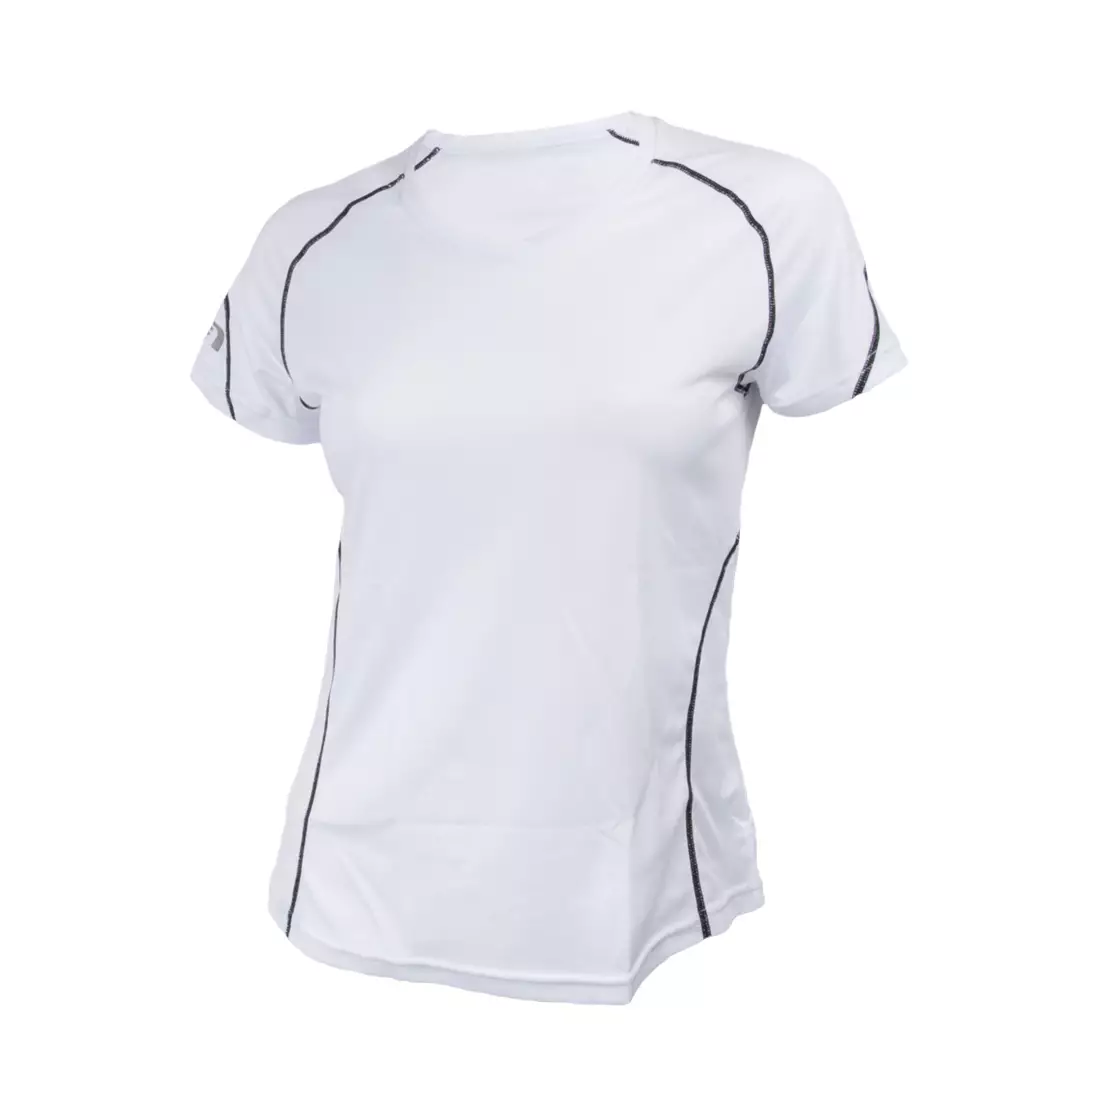 NEWLINE COOLMAX TEE - tricou pentru alergare pentru femei 13613-020